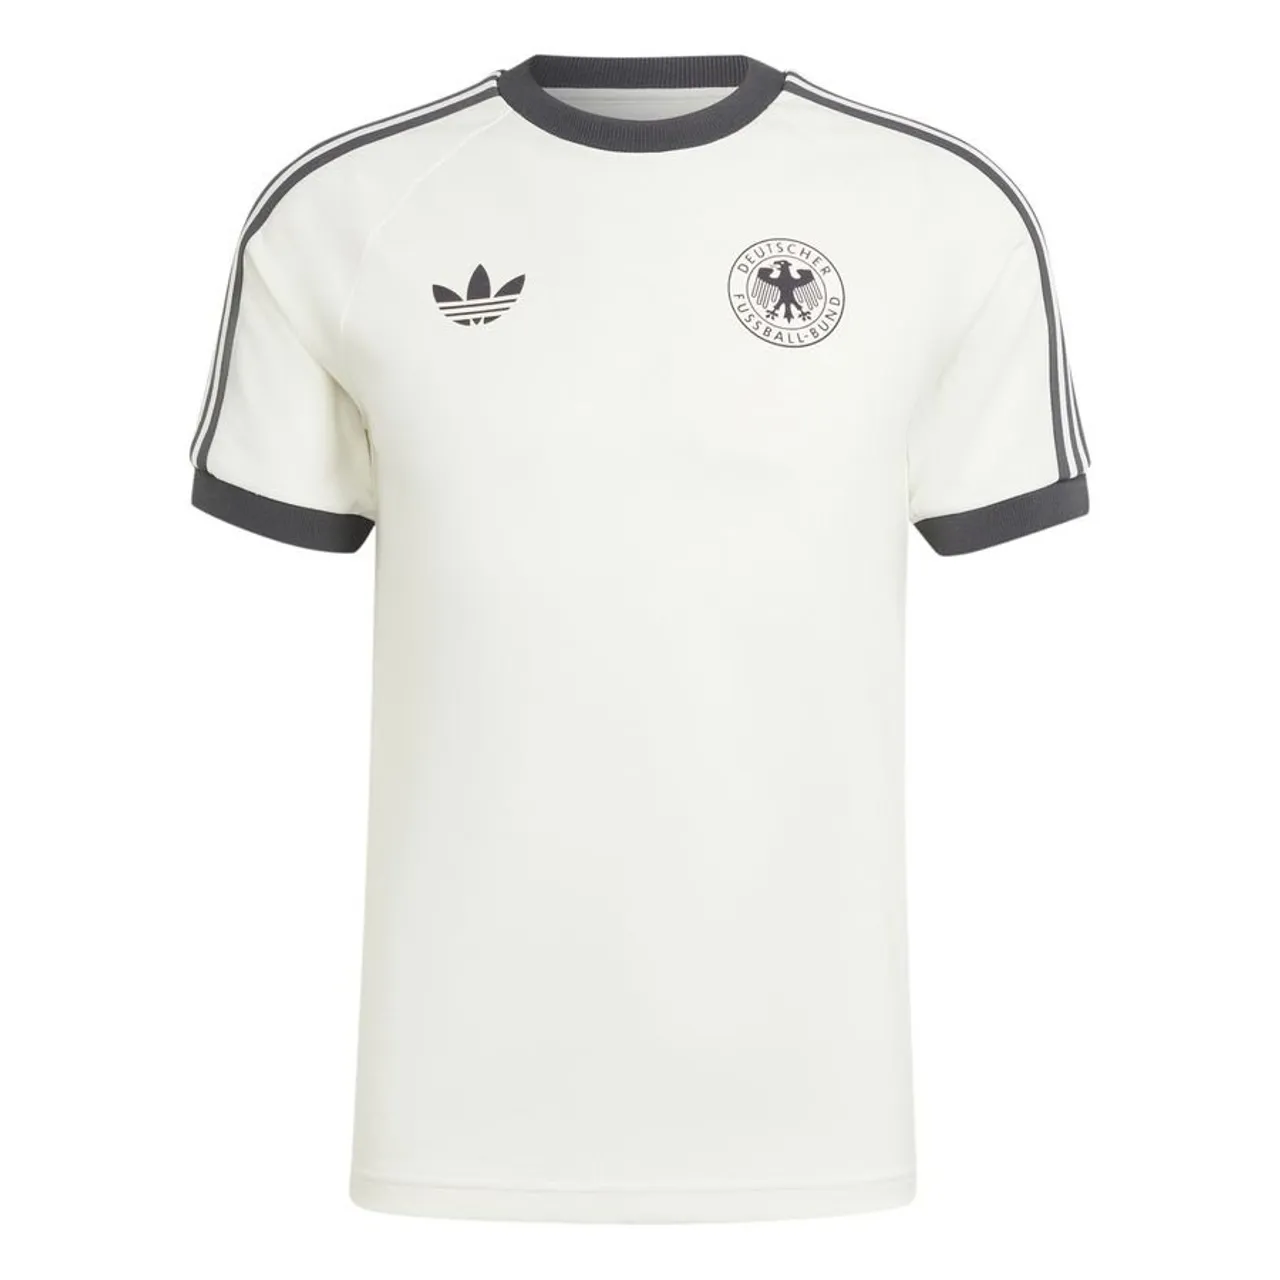 DFB Deutschland T-Shirt OG 3-Stripes - Weiß/Schwarz